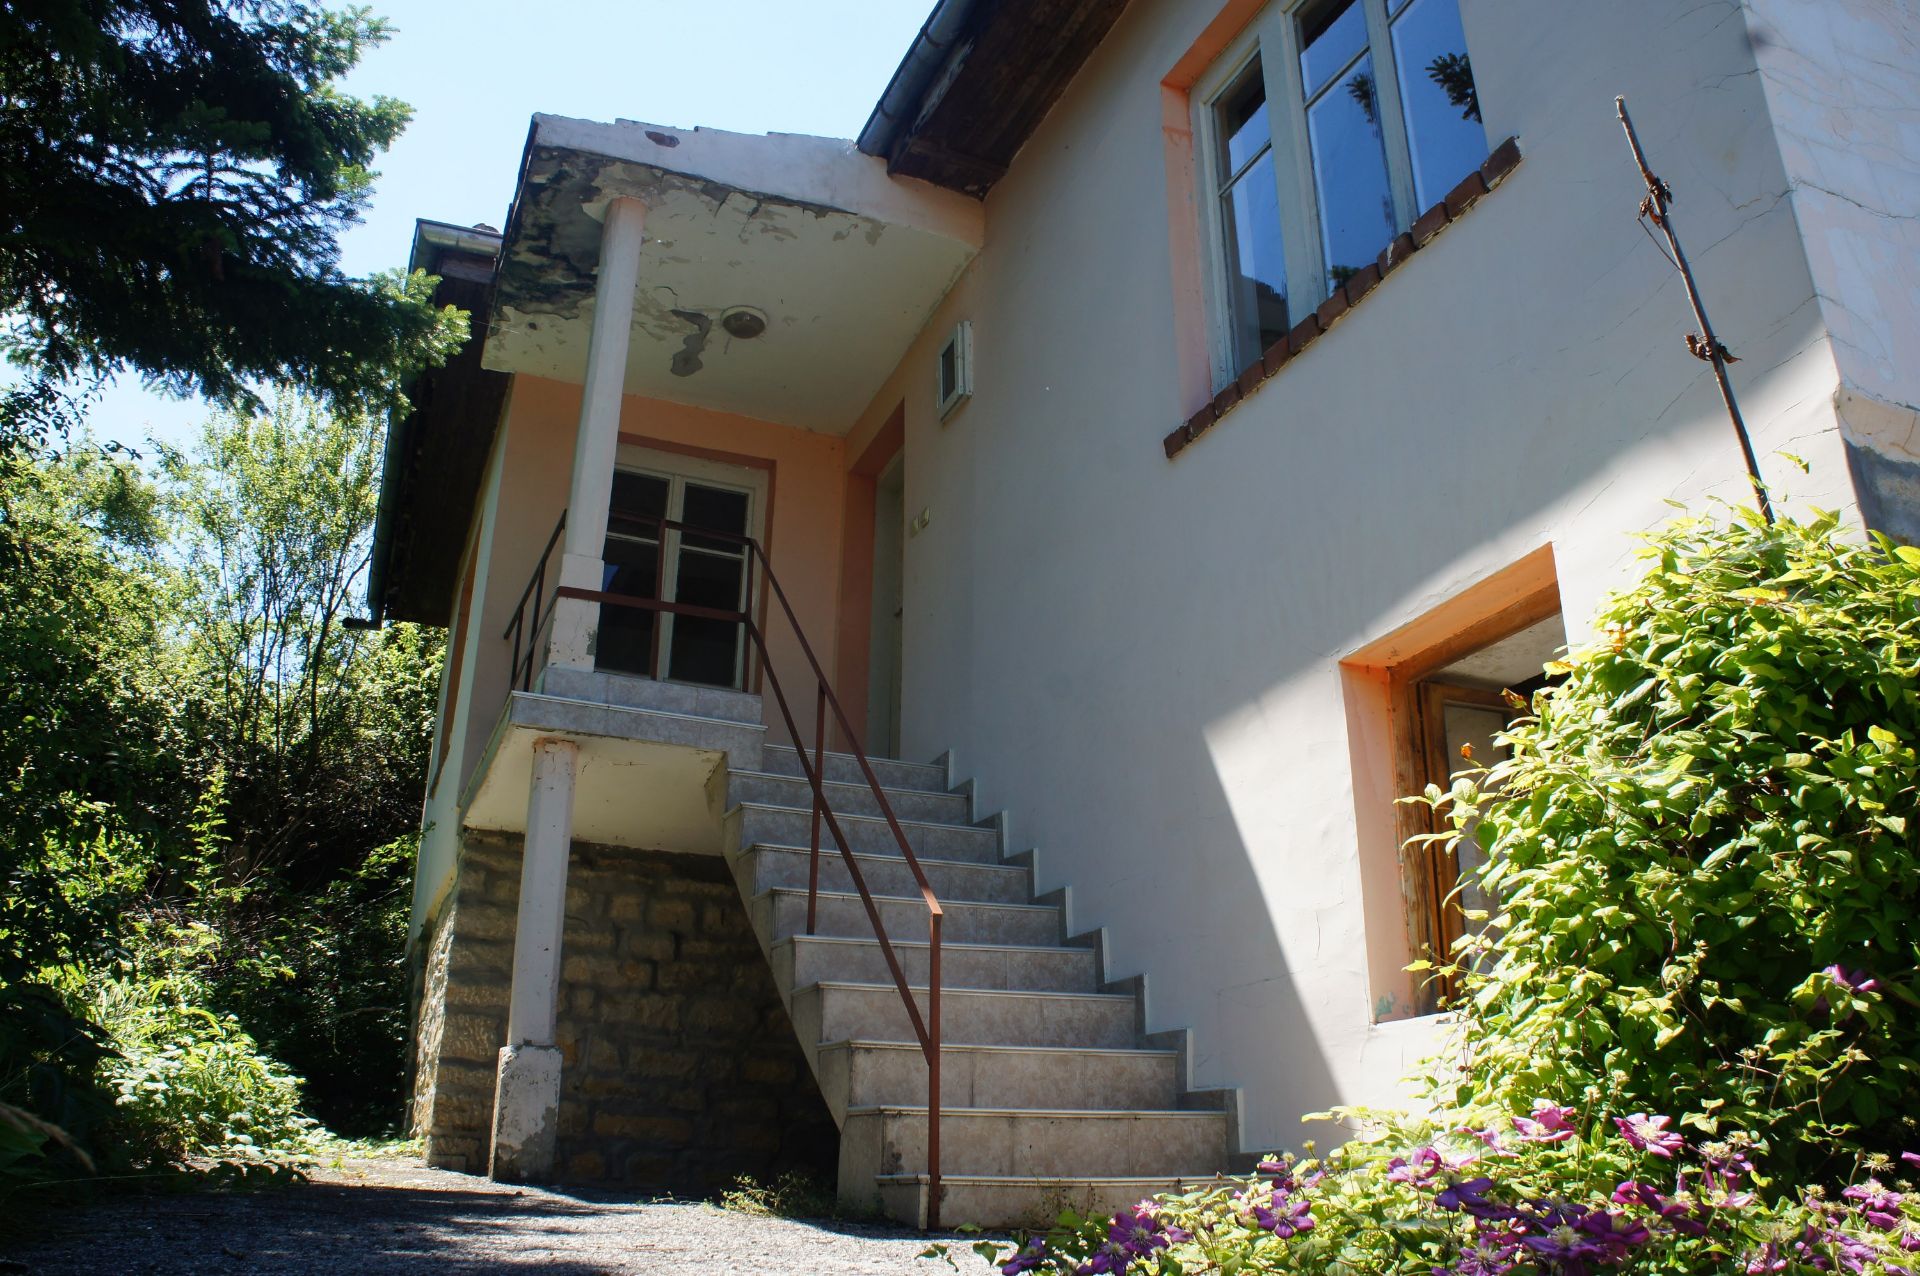 IMMACULATE Freehold Home and Land NR Veliko Tarnovo, Bulgaria - Image 5 of 29